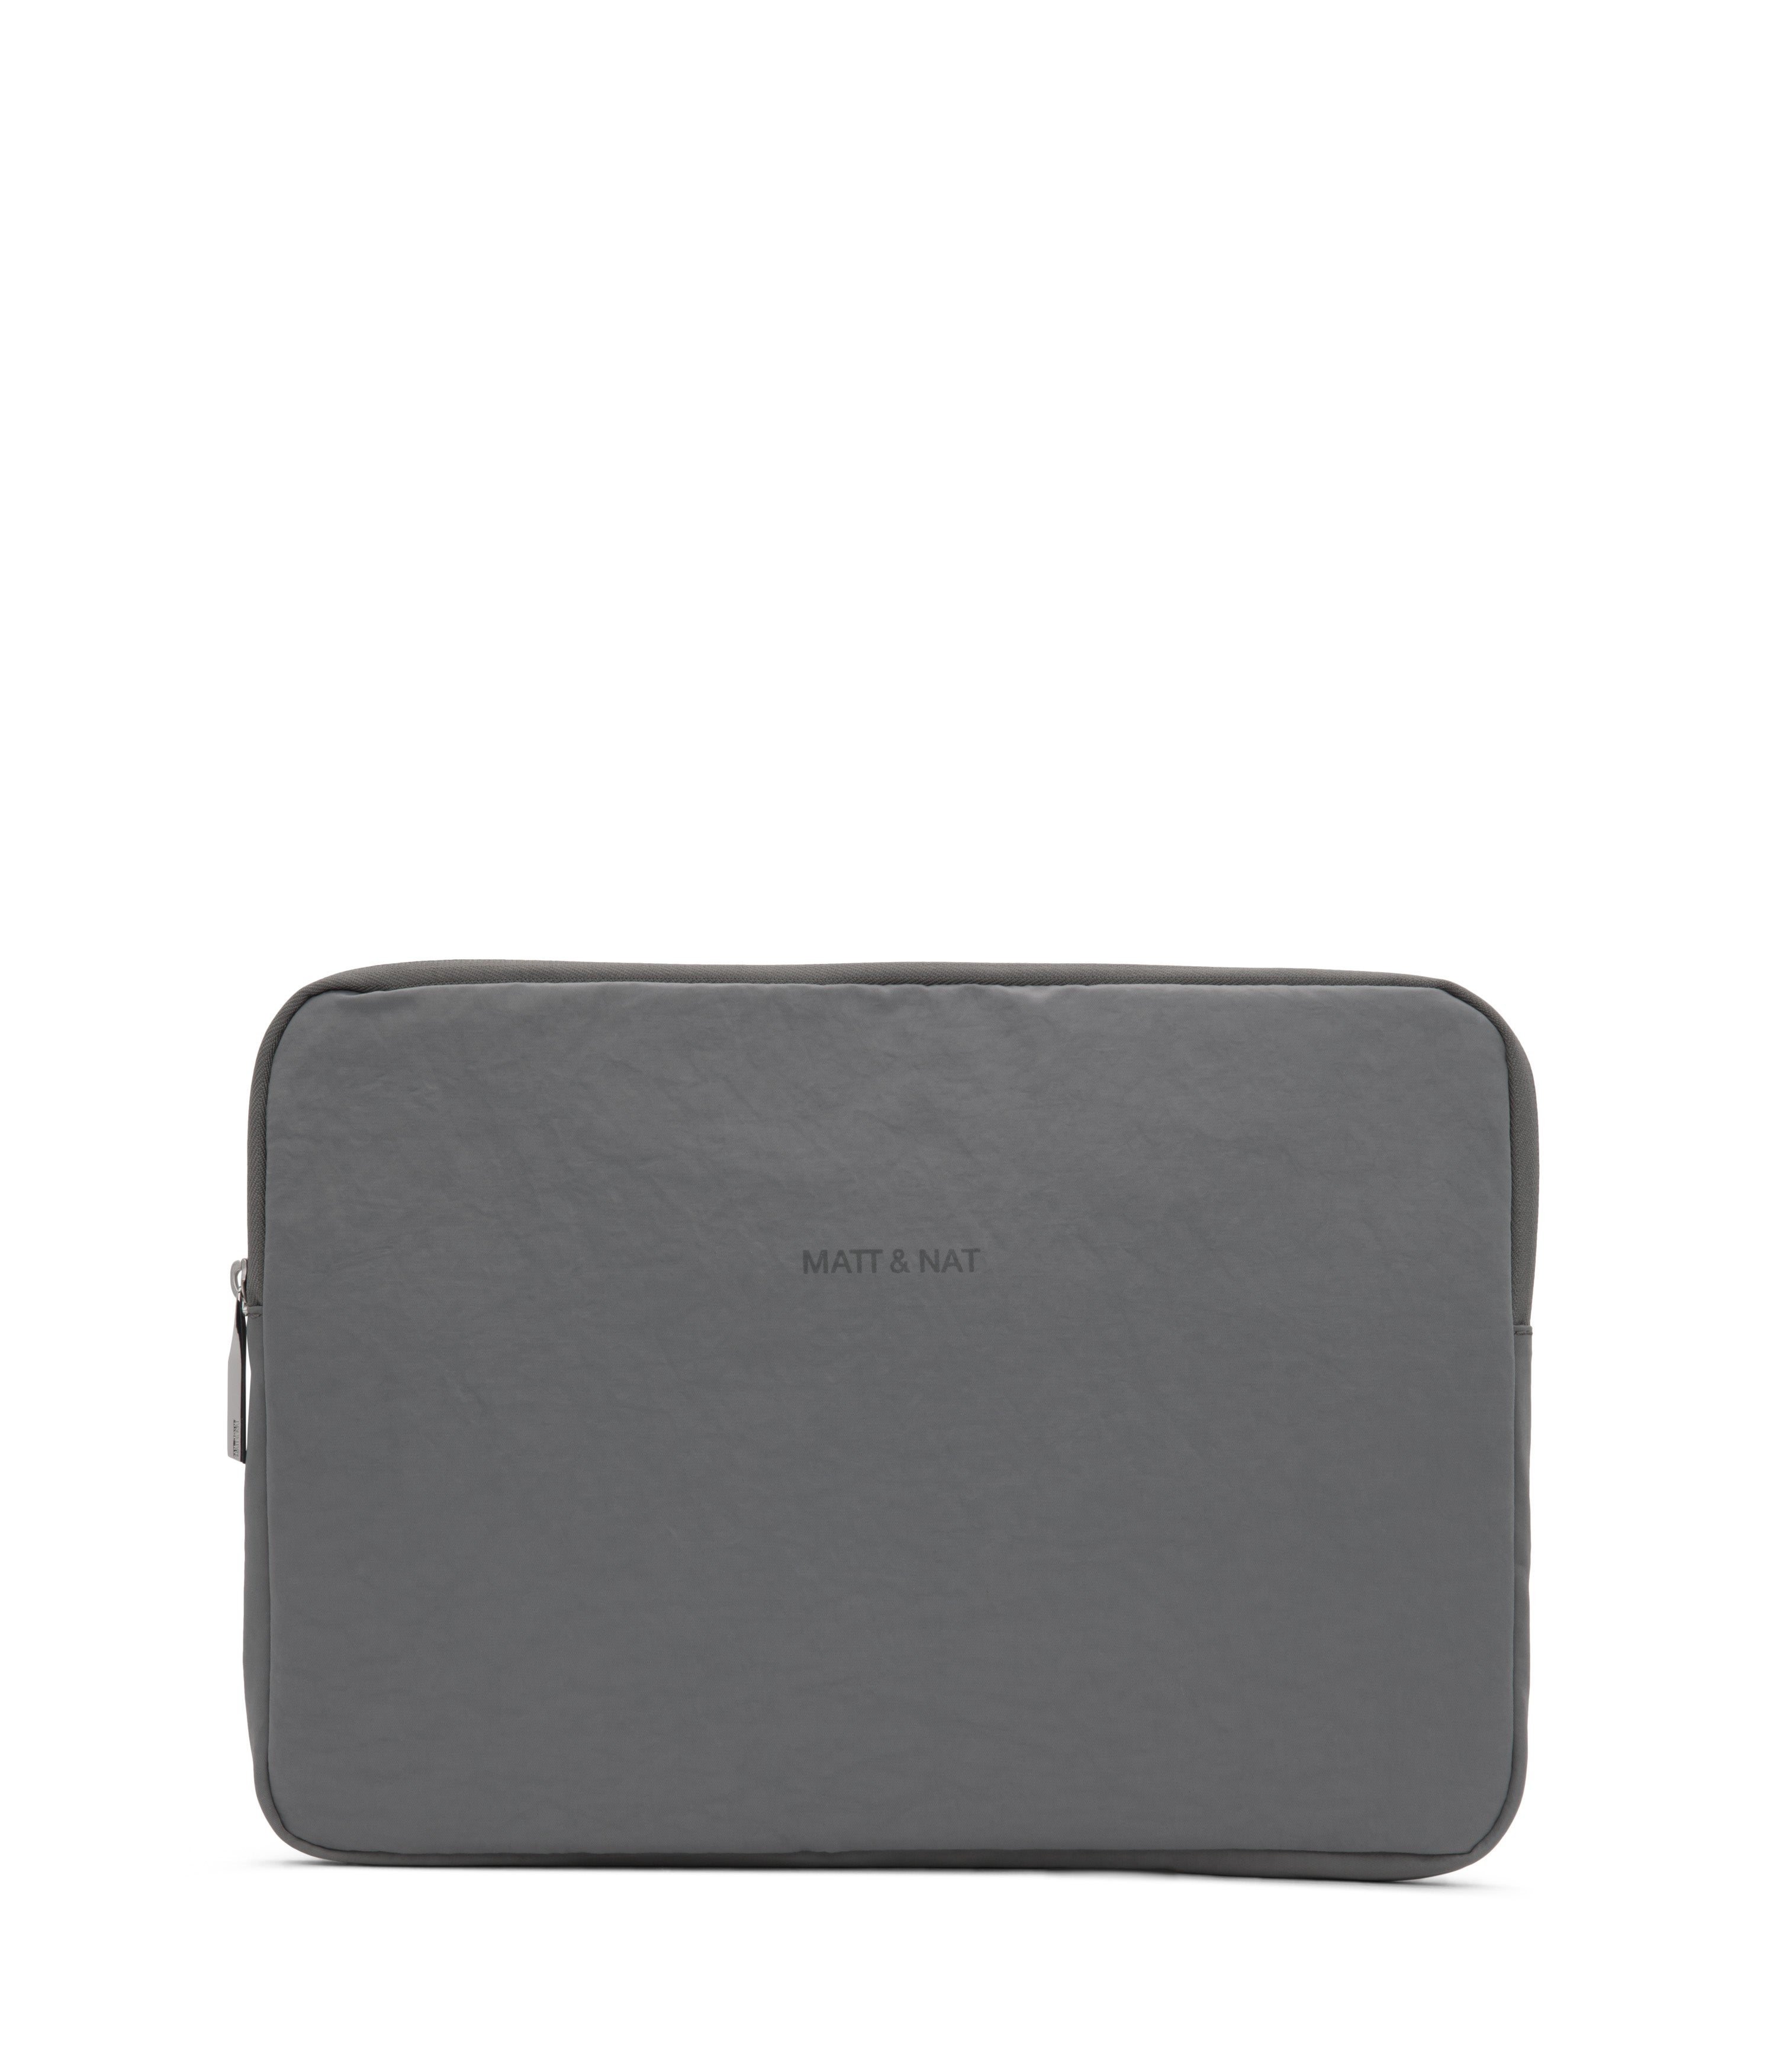 Matt & Nat + KEHL13 Laptop Sleeve – Grey